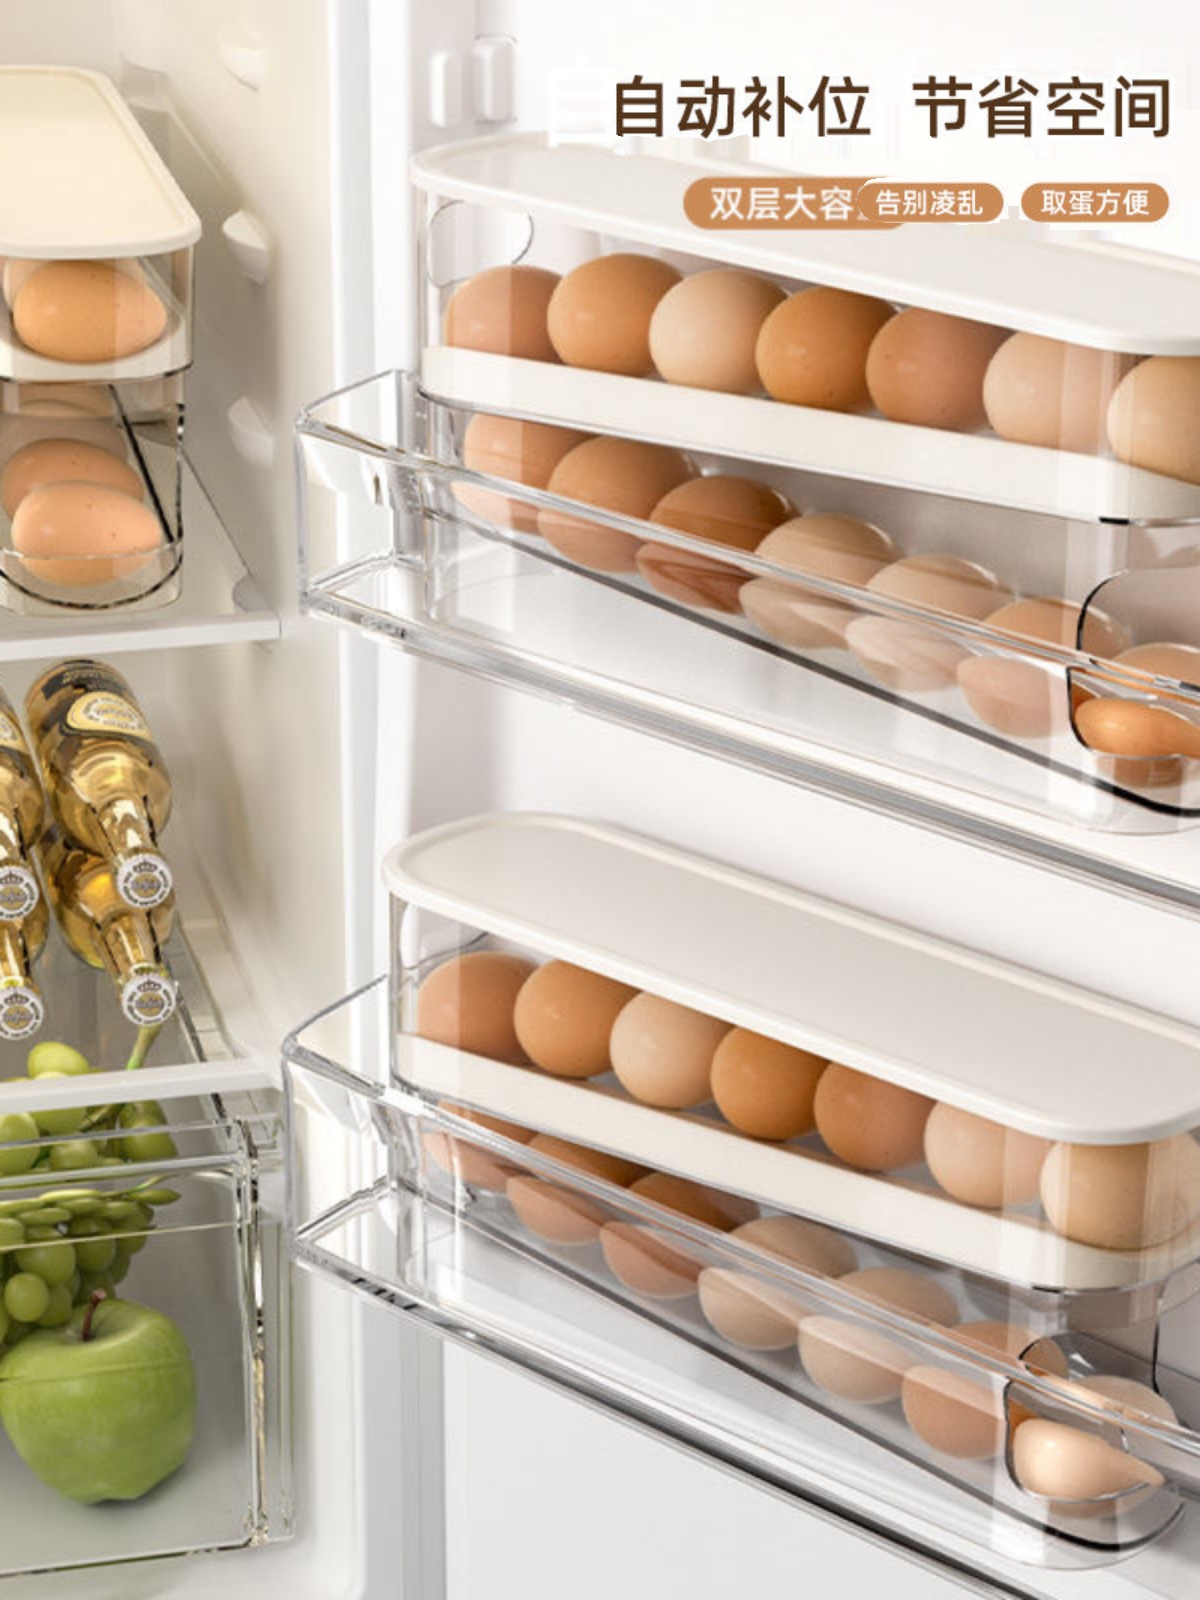 动款鸡蛋盒冰箱多层托大容量面侧自动蛋滚补位收纳窄蛋滚保鲜盒器